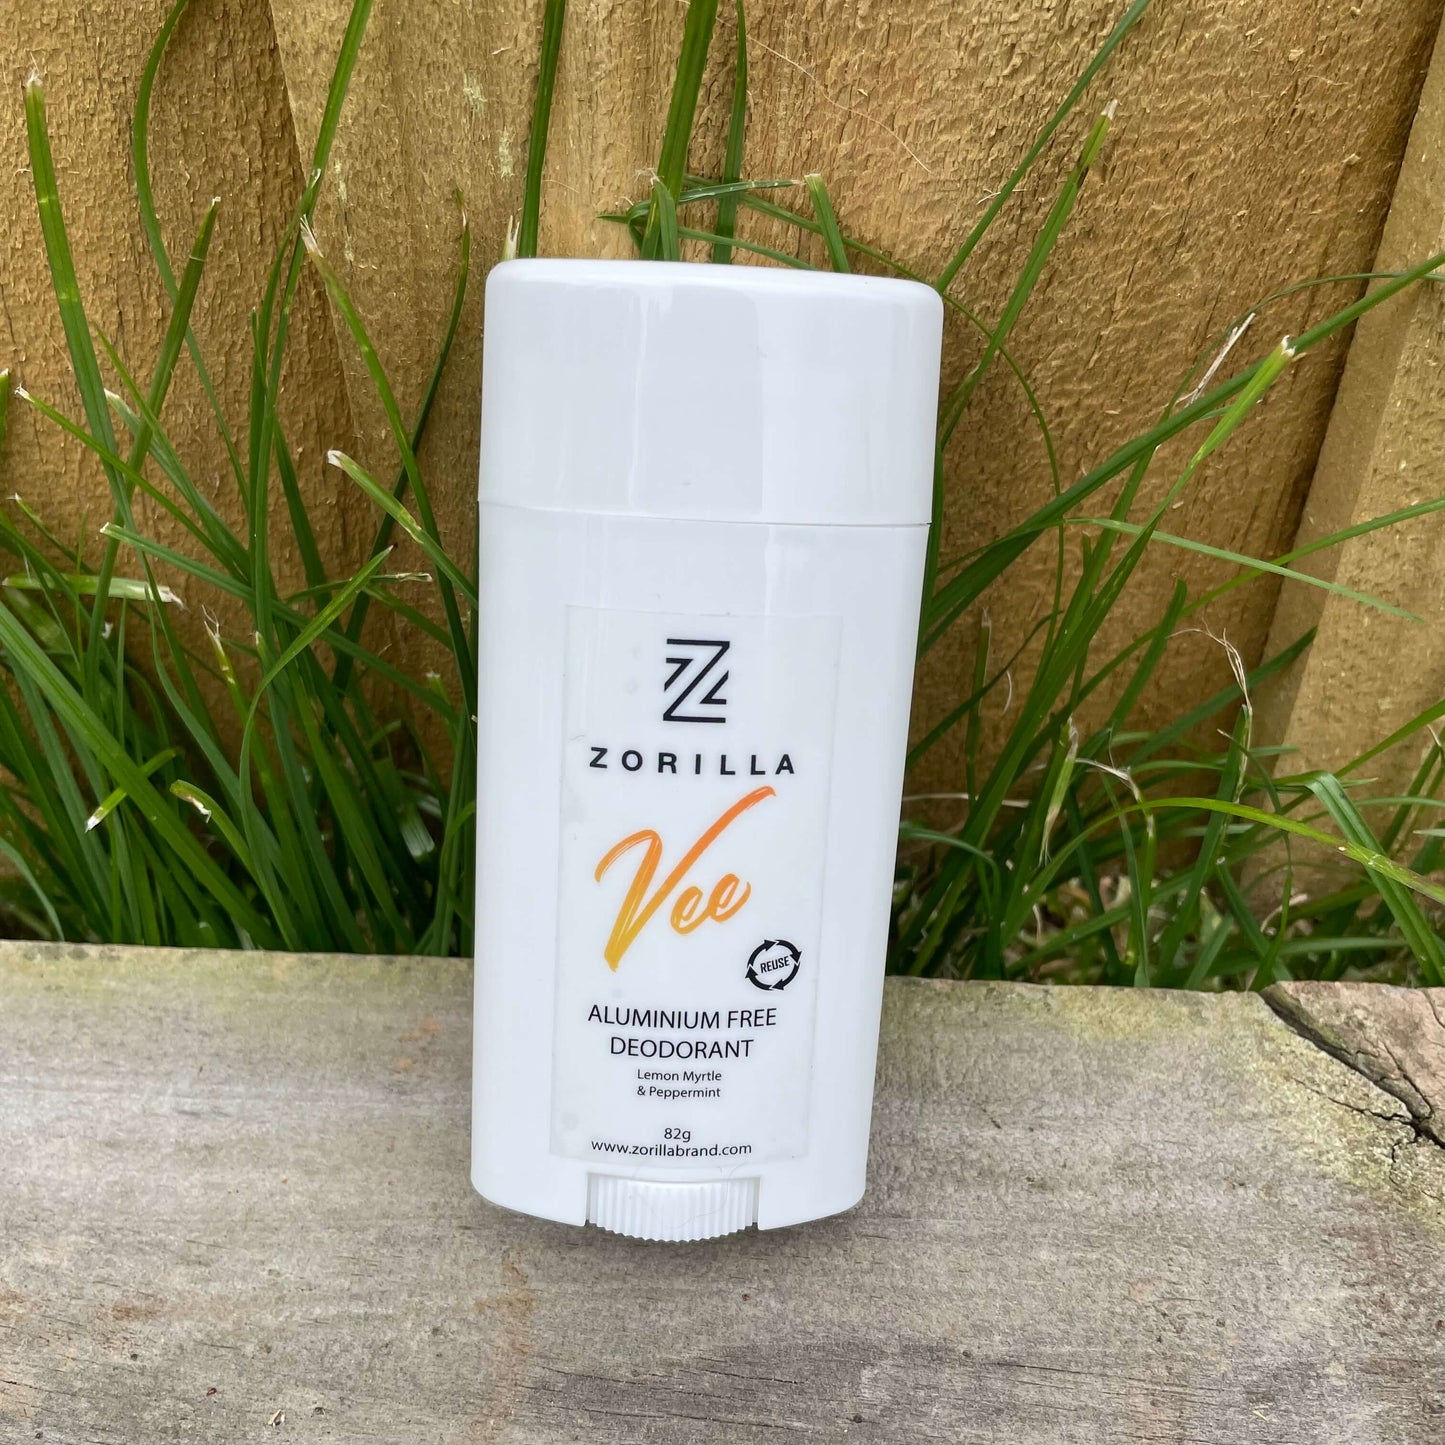 Zorilla natural men's deodorant tube - Vee